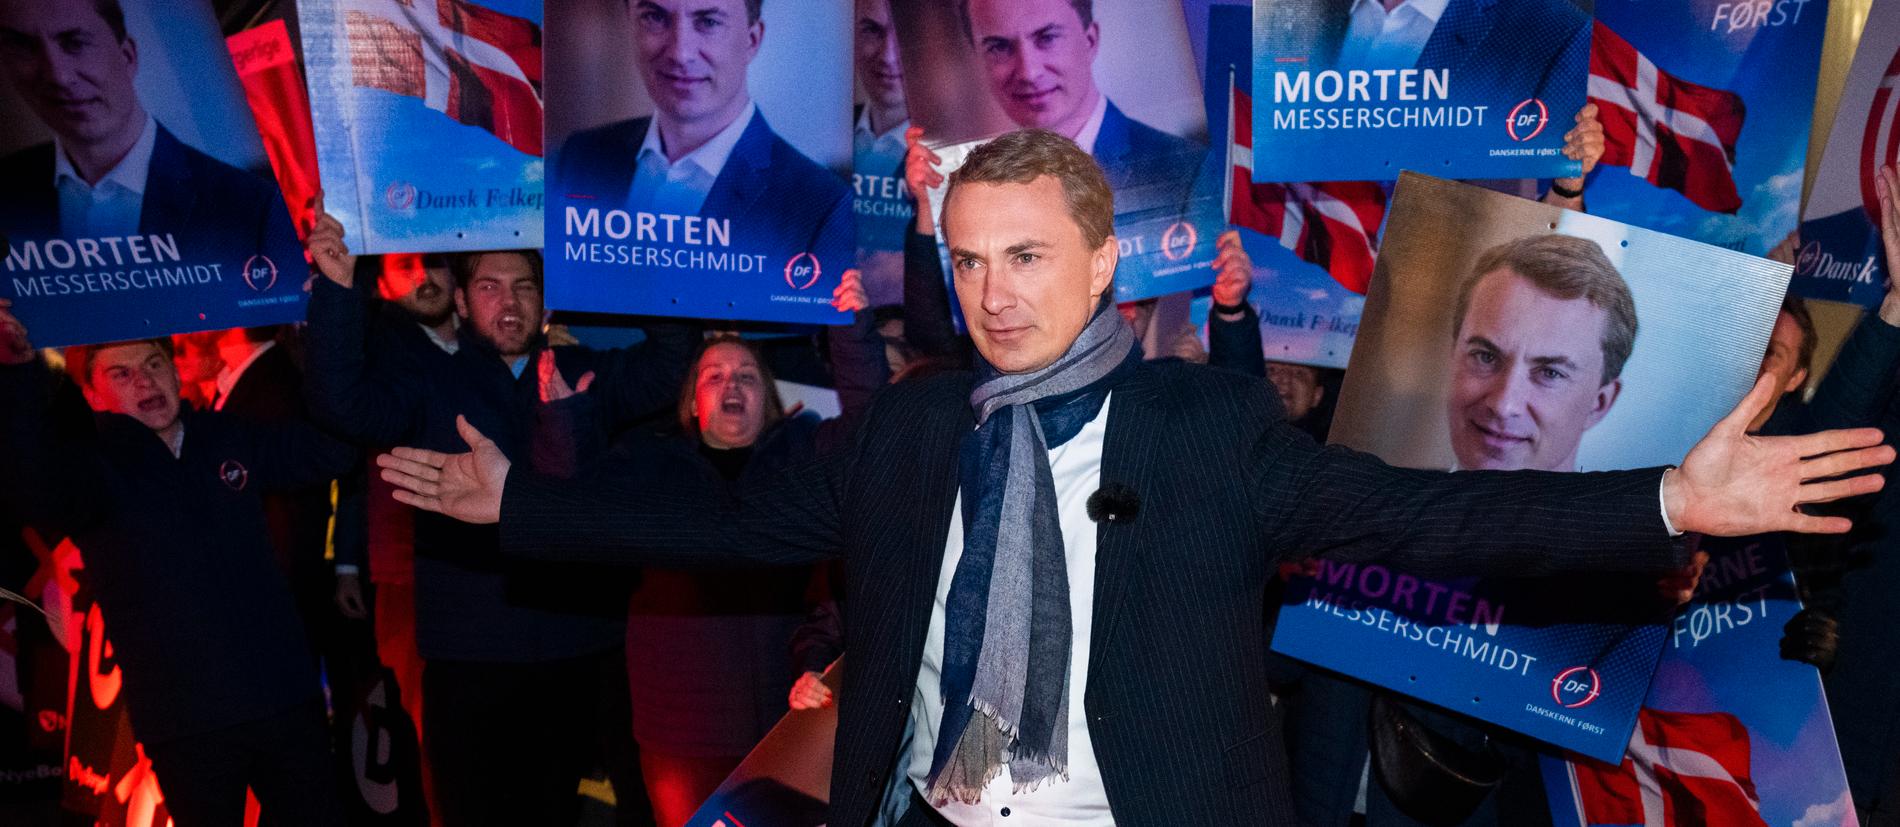 Morten Messerschmidt anländer till partiledardebatt i Köpenhamn i söndags.